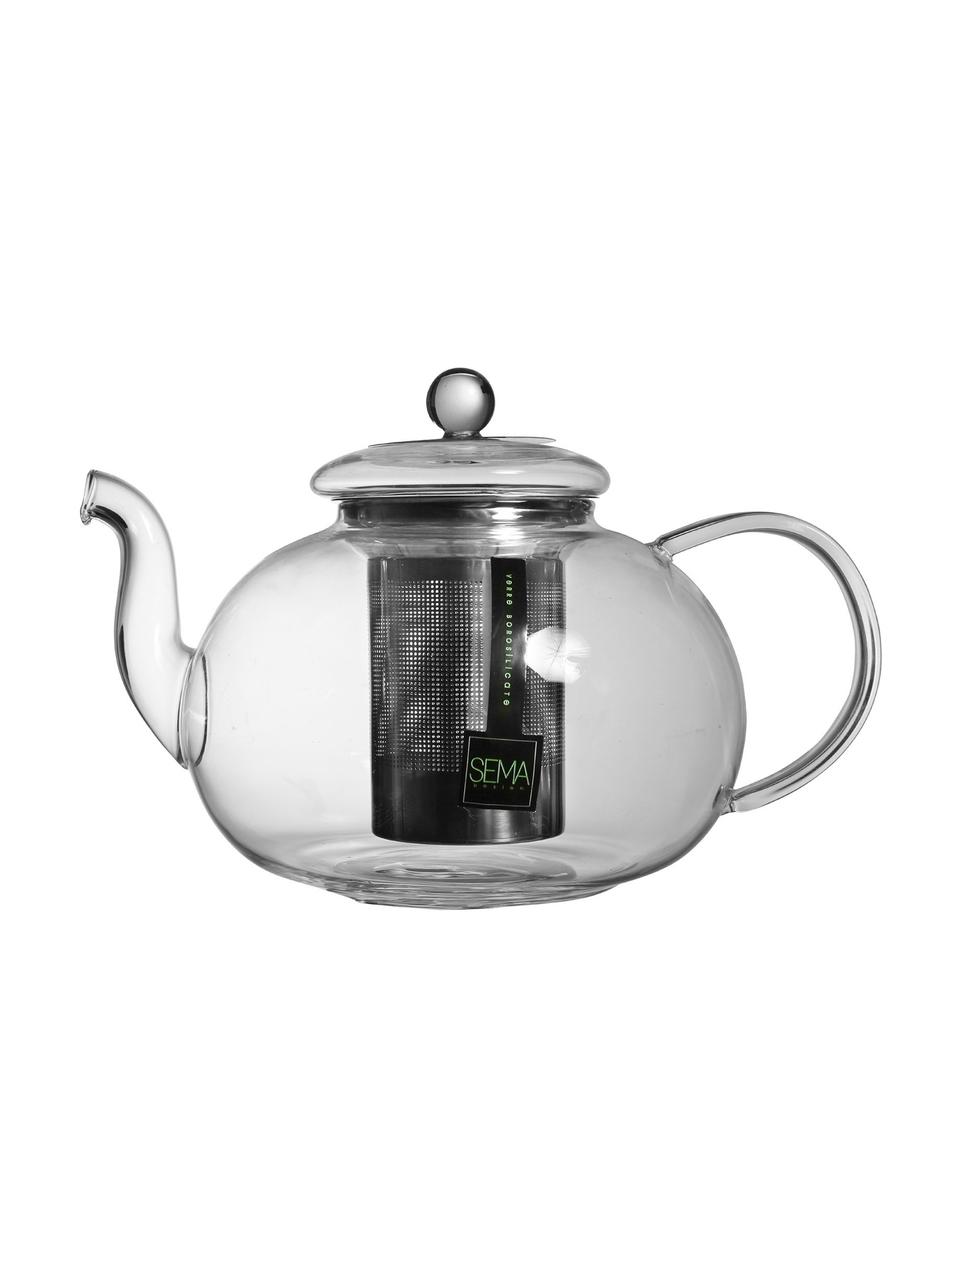 Teekanne Argyle mit Teesieb und Deckel, 1.4 L, Kanne: Glas, Sieb: Edelstahl, Transparent, Silberfarben, 1.4 L